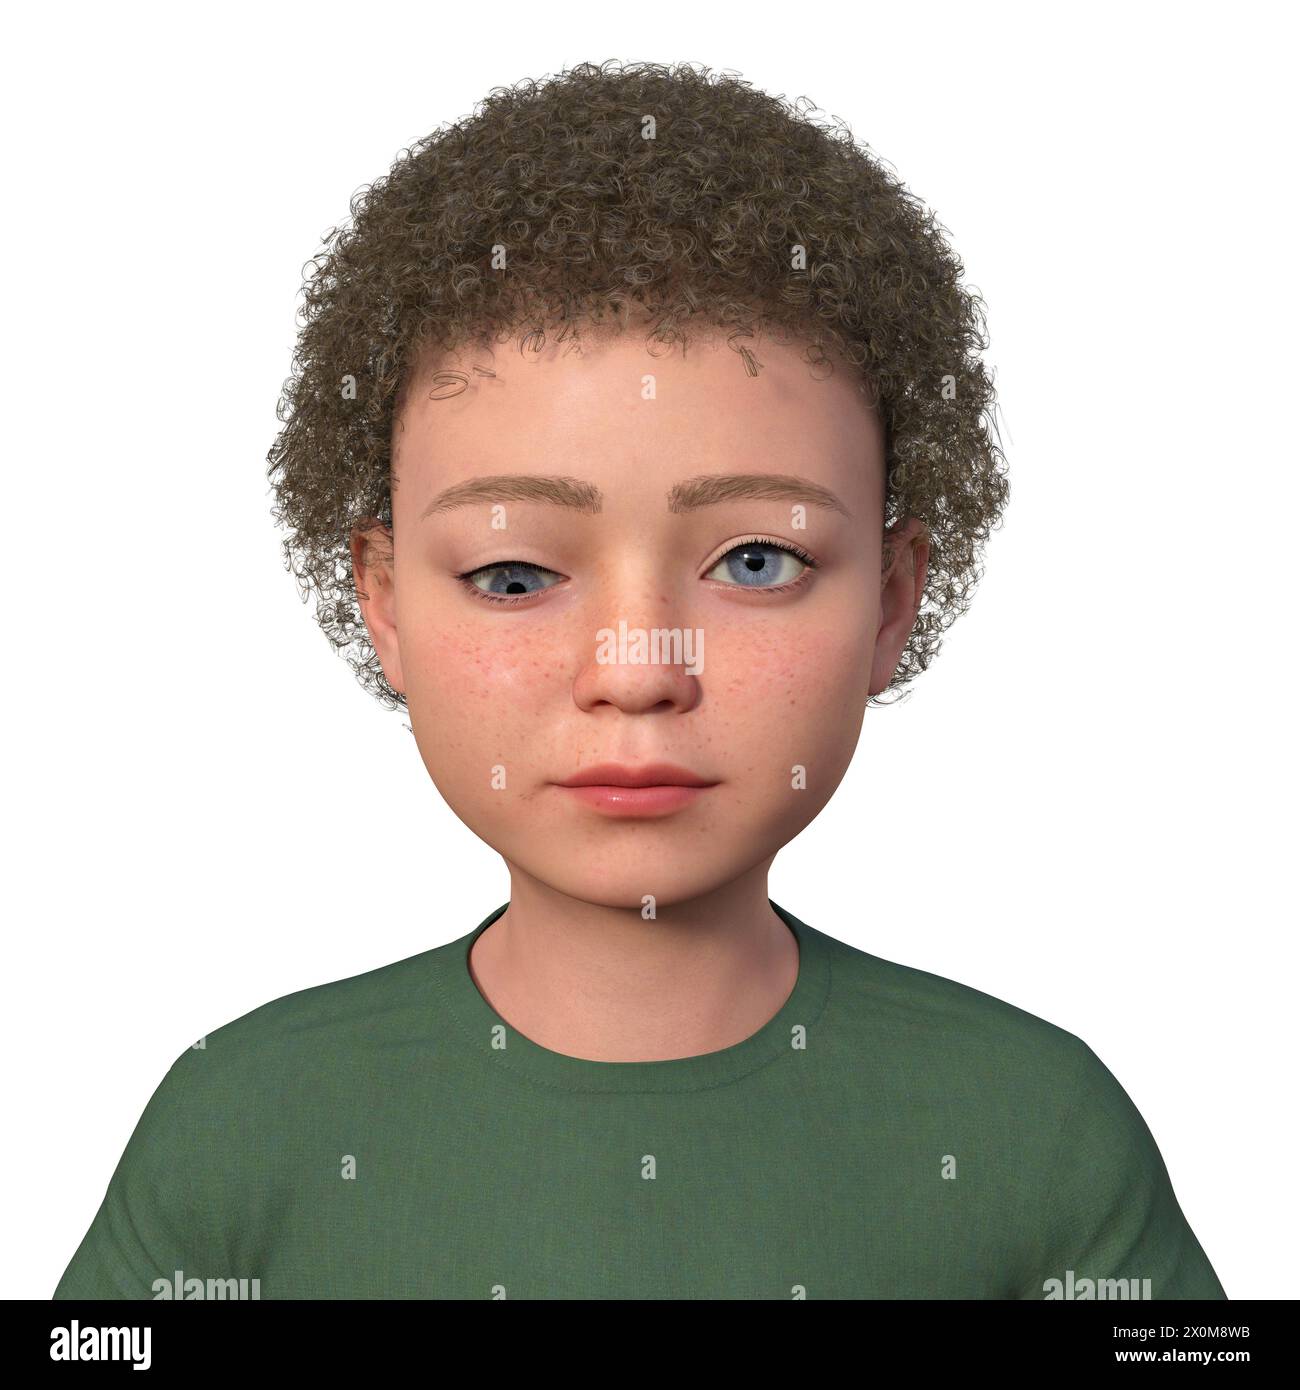 Illustration eines Kindes mit Hypotropie, das eine nach unten gerichtete Augenverschiebung zeigt. Stockfoto